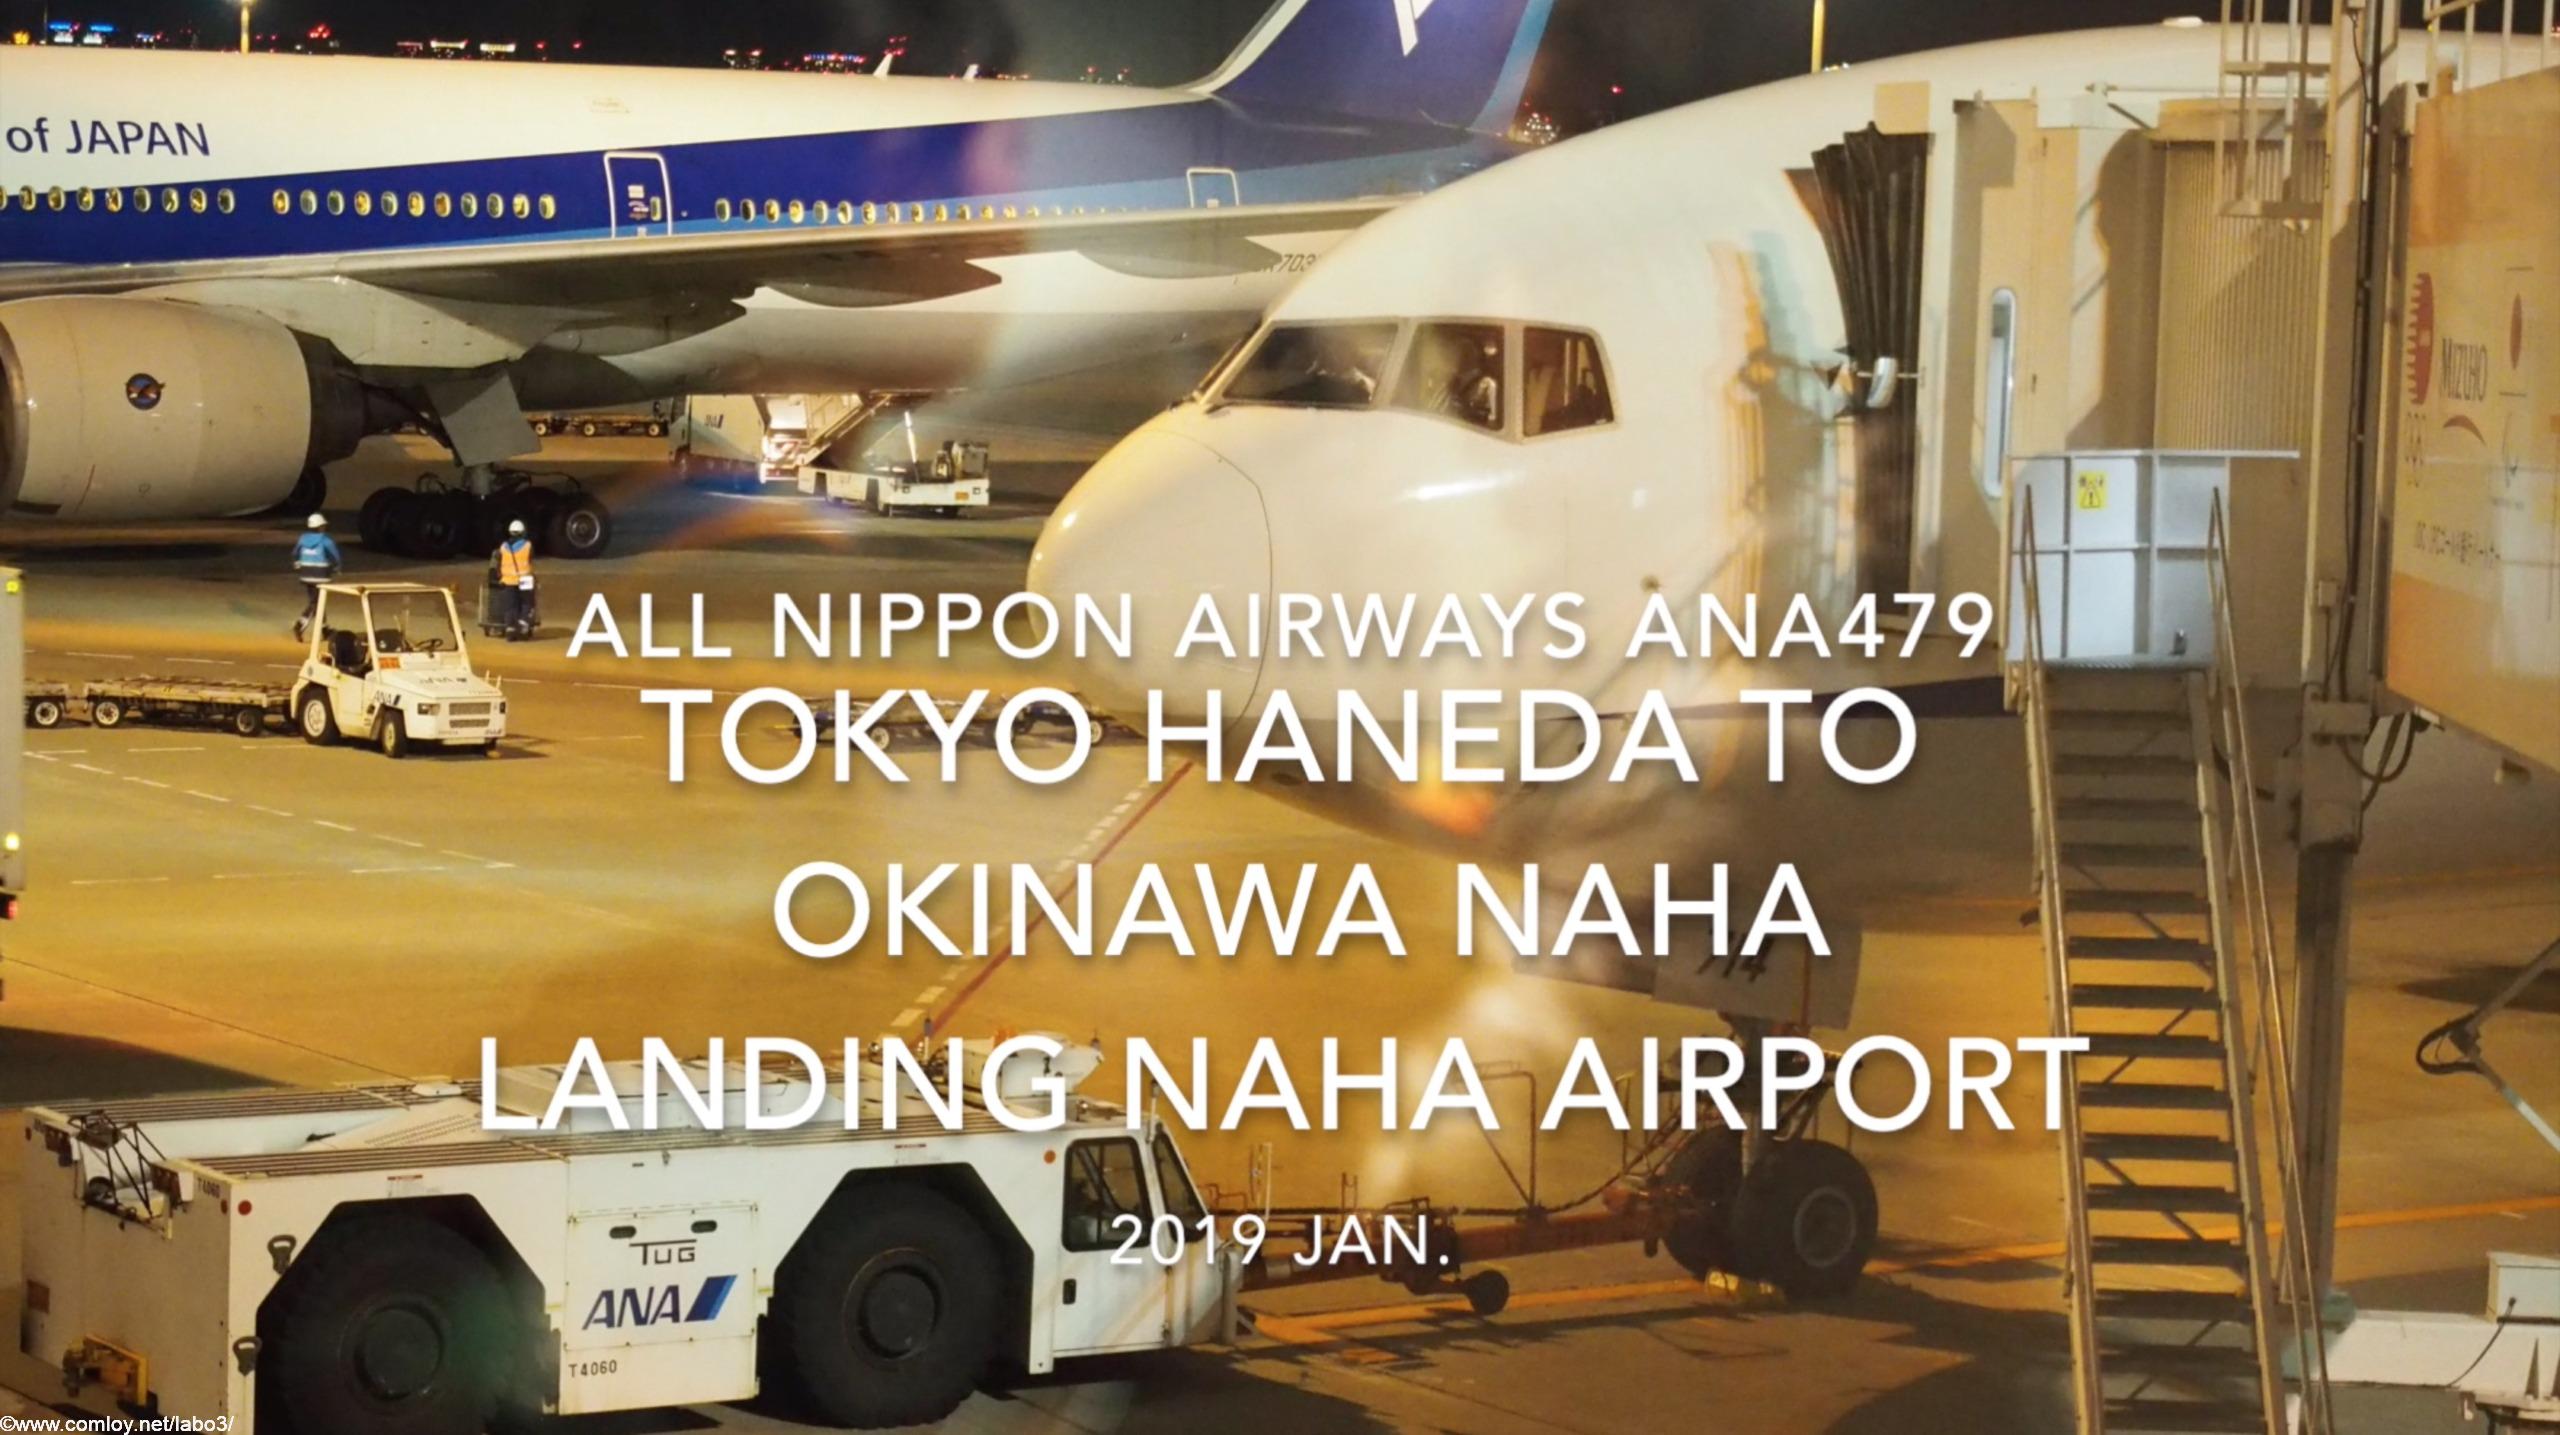 【機内から離着陸映像】2019 Jan. All Nippon Airways ANA479 TOKYO HANEDA to OKINAWA NAHA Landing NAHA Airport 全日空 羽田 - 那覇 那覇空港着陸